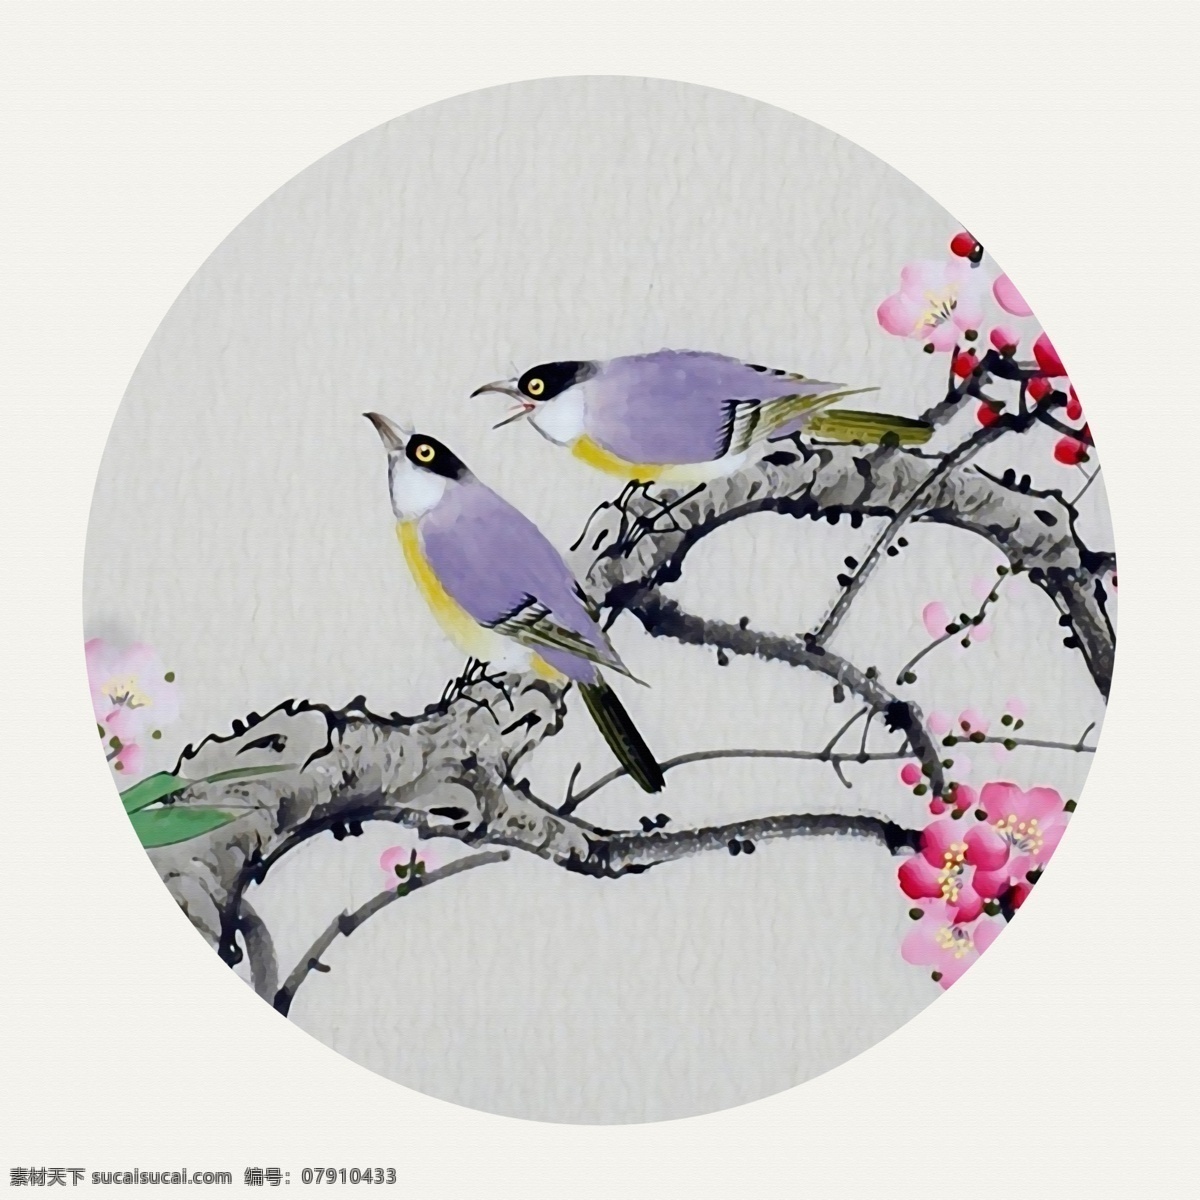 新 中式 花鸟 国画 三联 装饰画 共享 环境设计 室内设计